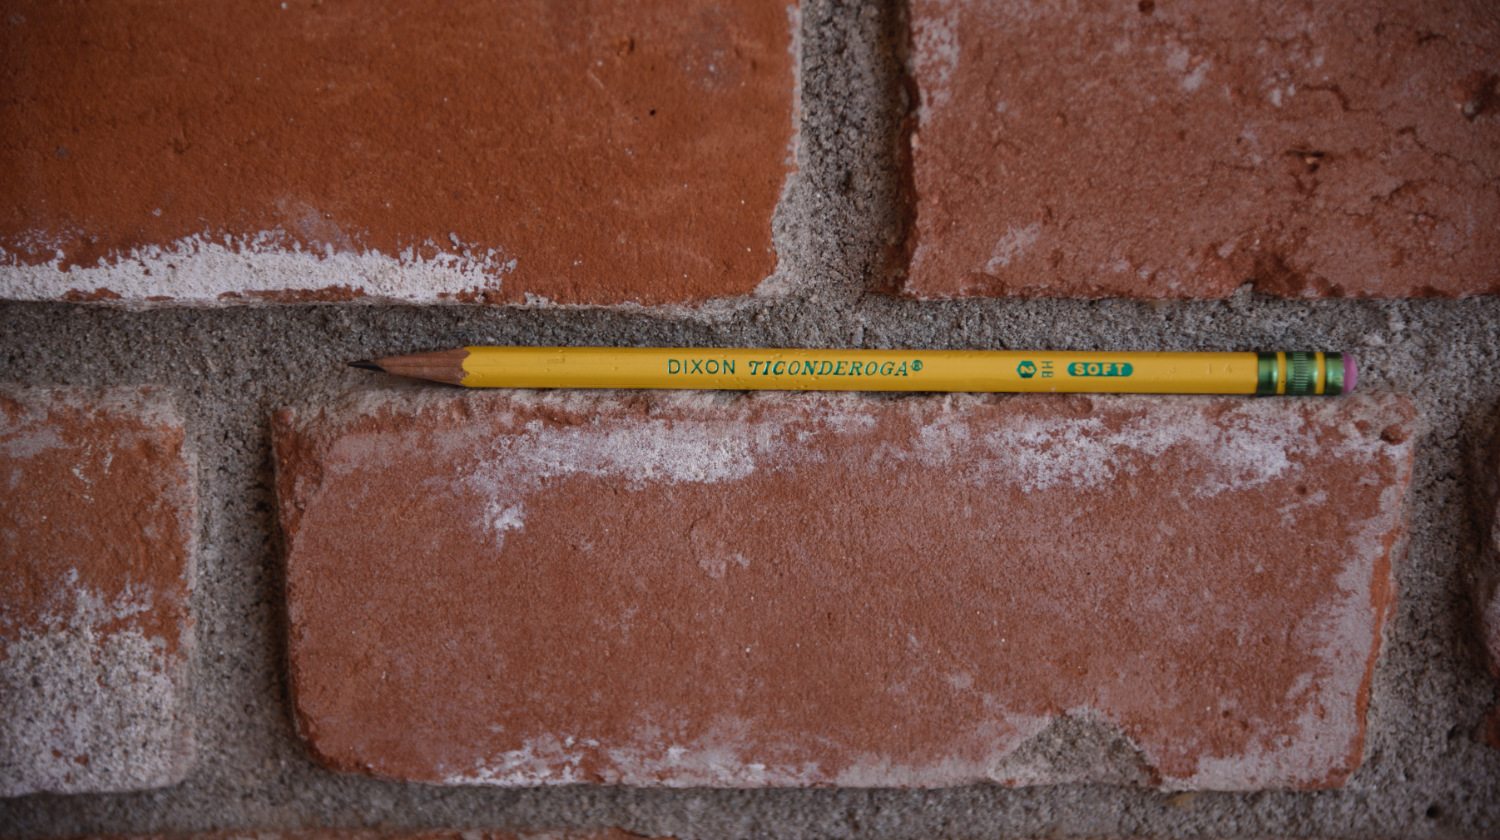 well-loved Dixon Ticonderoga pencil